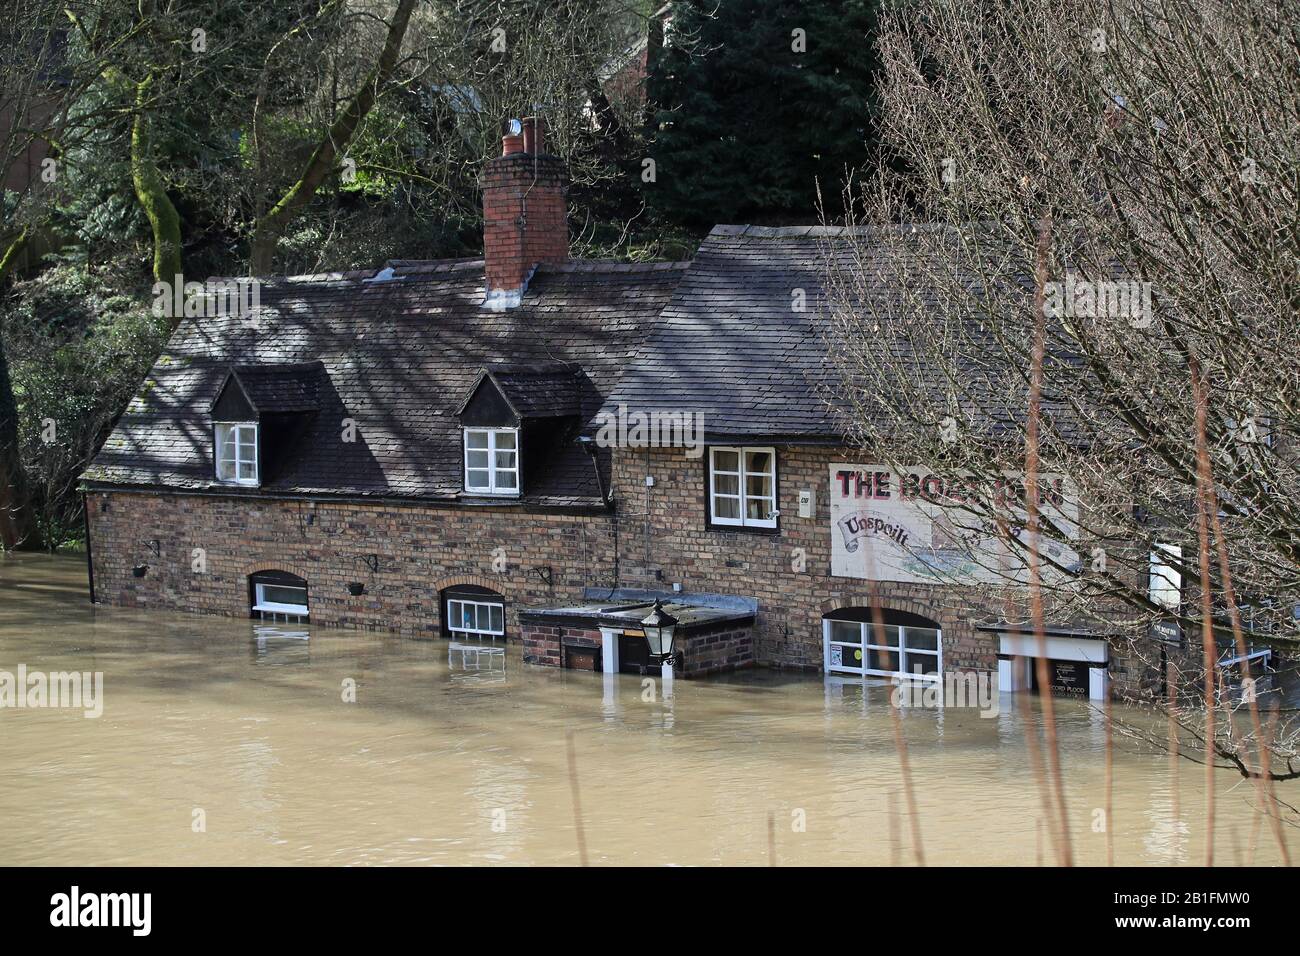 Das Boat Inn in Jackfield in der Nähe von Ironbridge, Shropshire, Floodwaters hat die höchsten Speicherebenen erreicht, da der River Severn weiterhin hoch ist, mit Warnungen vor weiteren Überschwemmungen über Großbritannien. Siehe PA Story WETTERSTURM. Der Fotokredit sollte lauten: Nick Potts/PA Wire Stockfoto